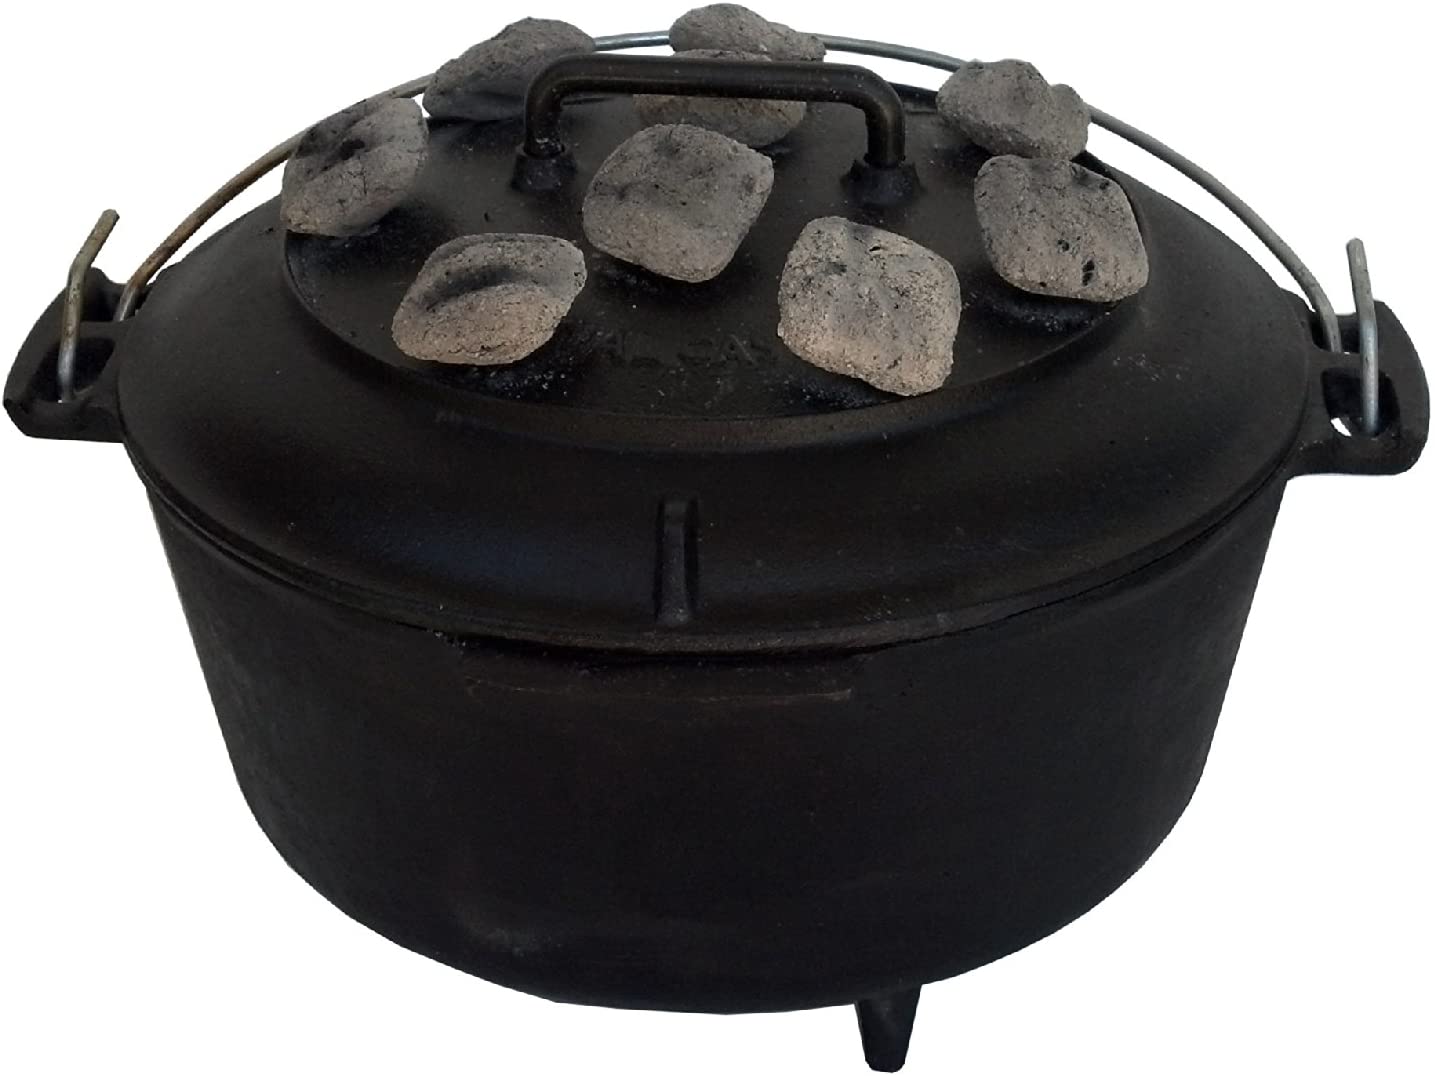 volcano-grills-cast-iron-dutch-oven-charcoal-briquettes